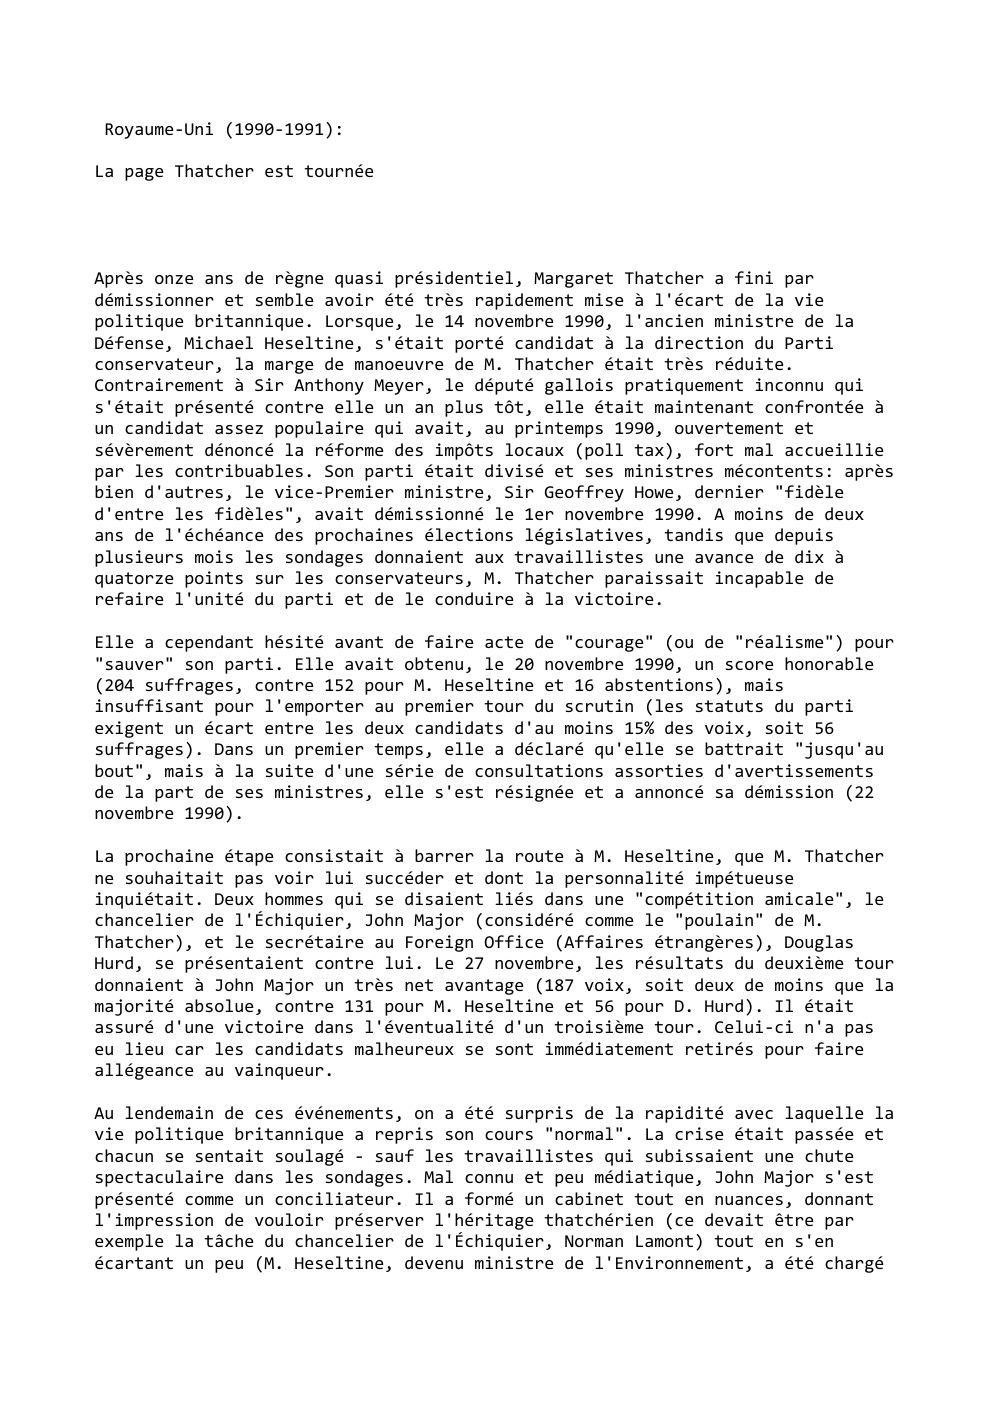 Prévisualisation du document Royaume-Uni (1990-1991):
La page Thatcher est tournée

Après onze ans de règne quasi présidentiel, Margaret Thatcher a fini par
démissionner...